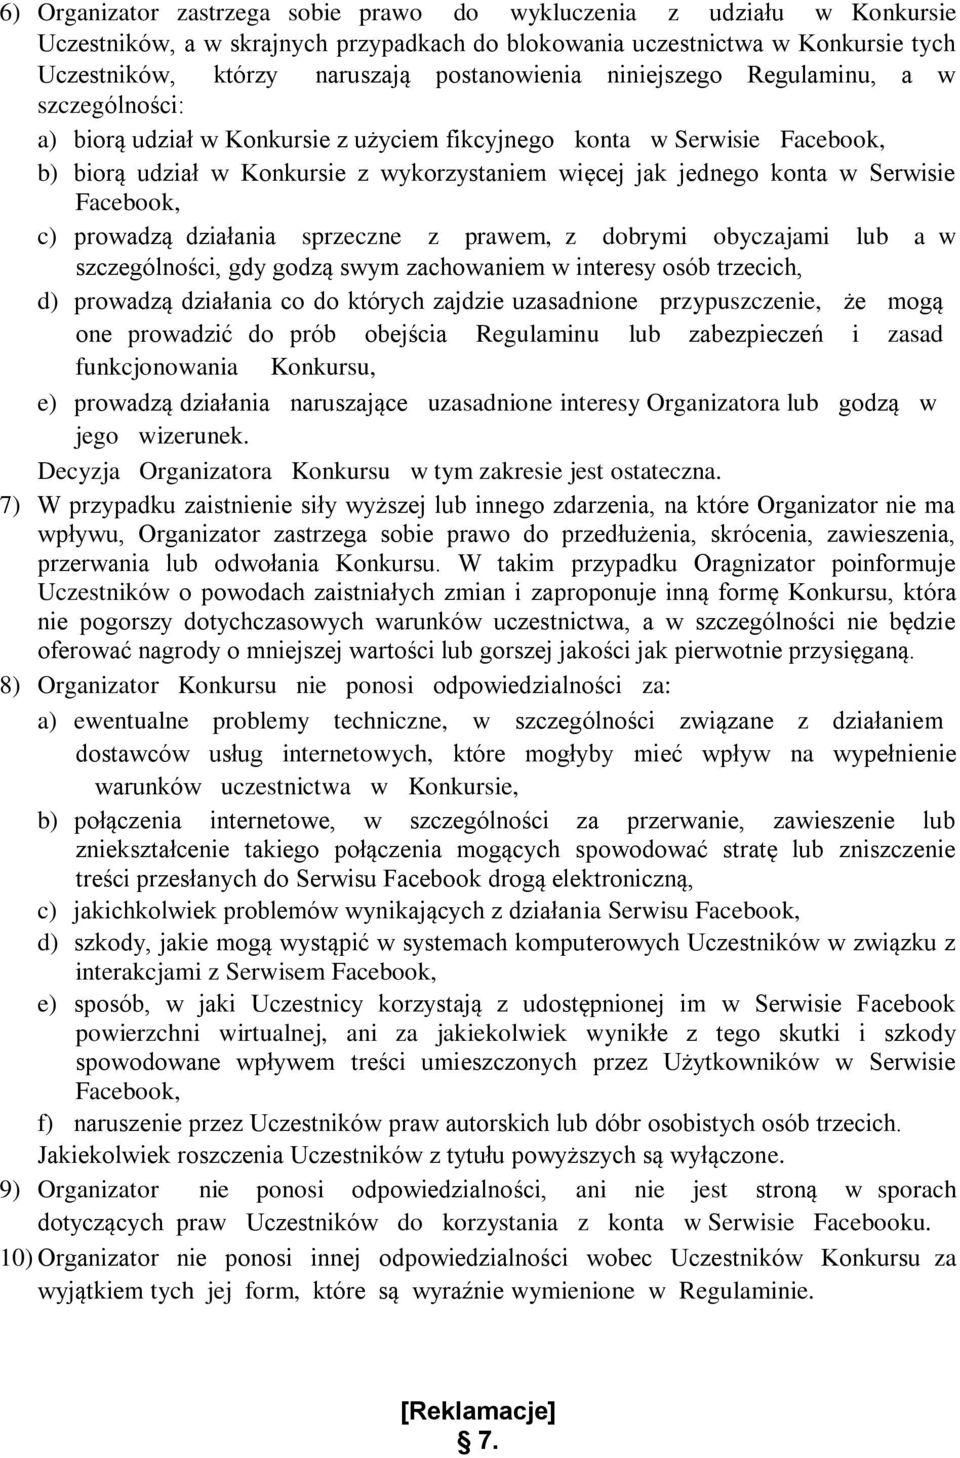 konta w Serwisie Facebook, c) prowadzą działania sprzeczne z prawem, z dobrymi obyczajami lub a w szczególności, gdy godzą swym zachowaniem w interesy osób trzecich, d) prowadzą działania co do